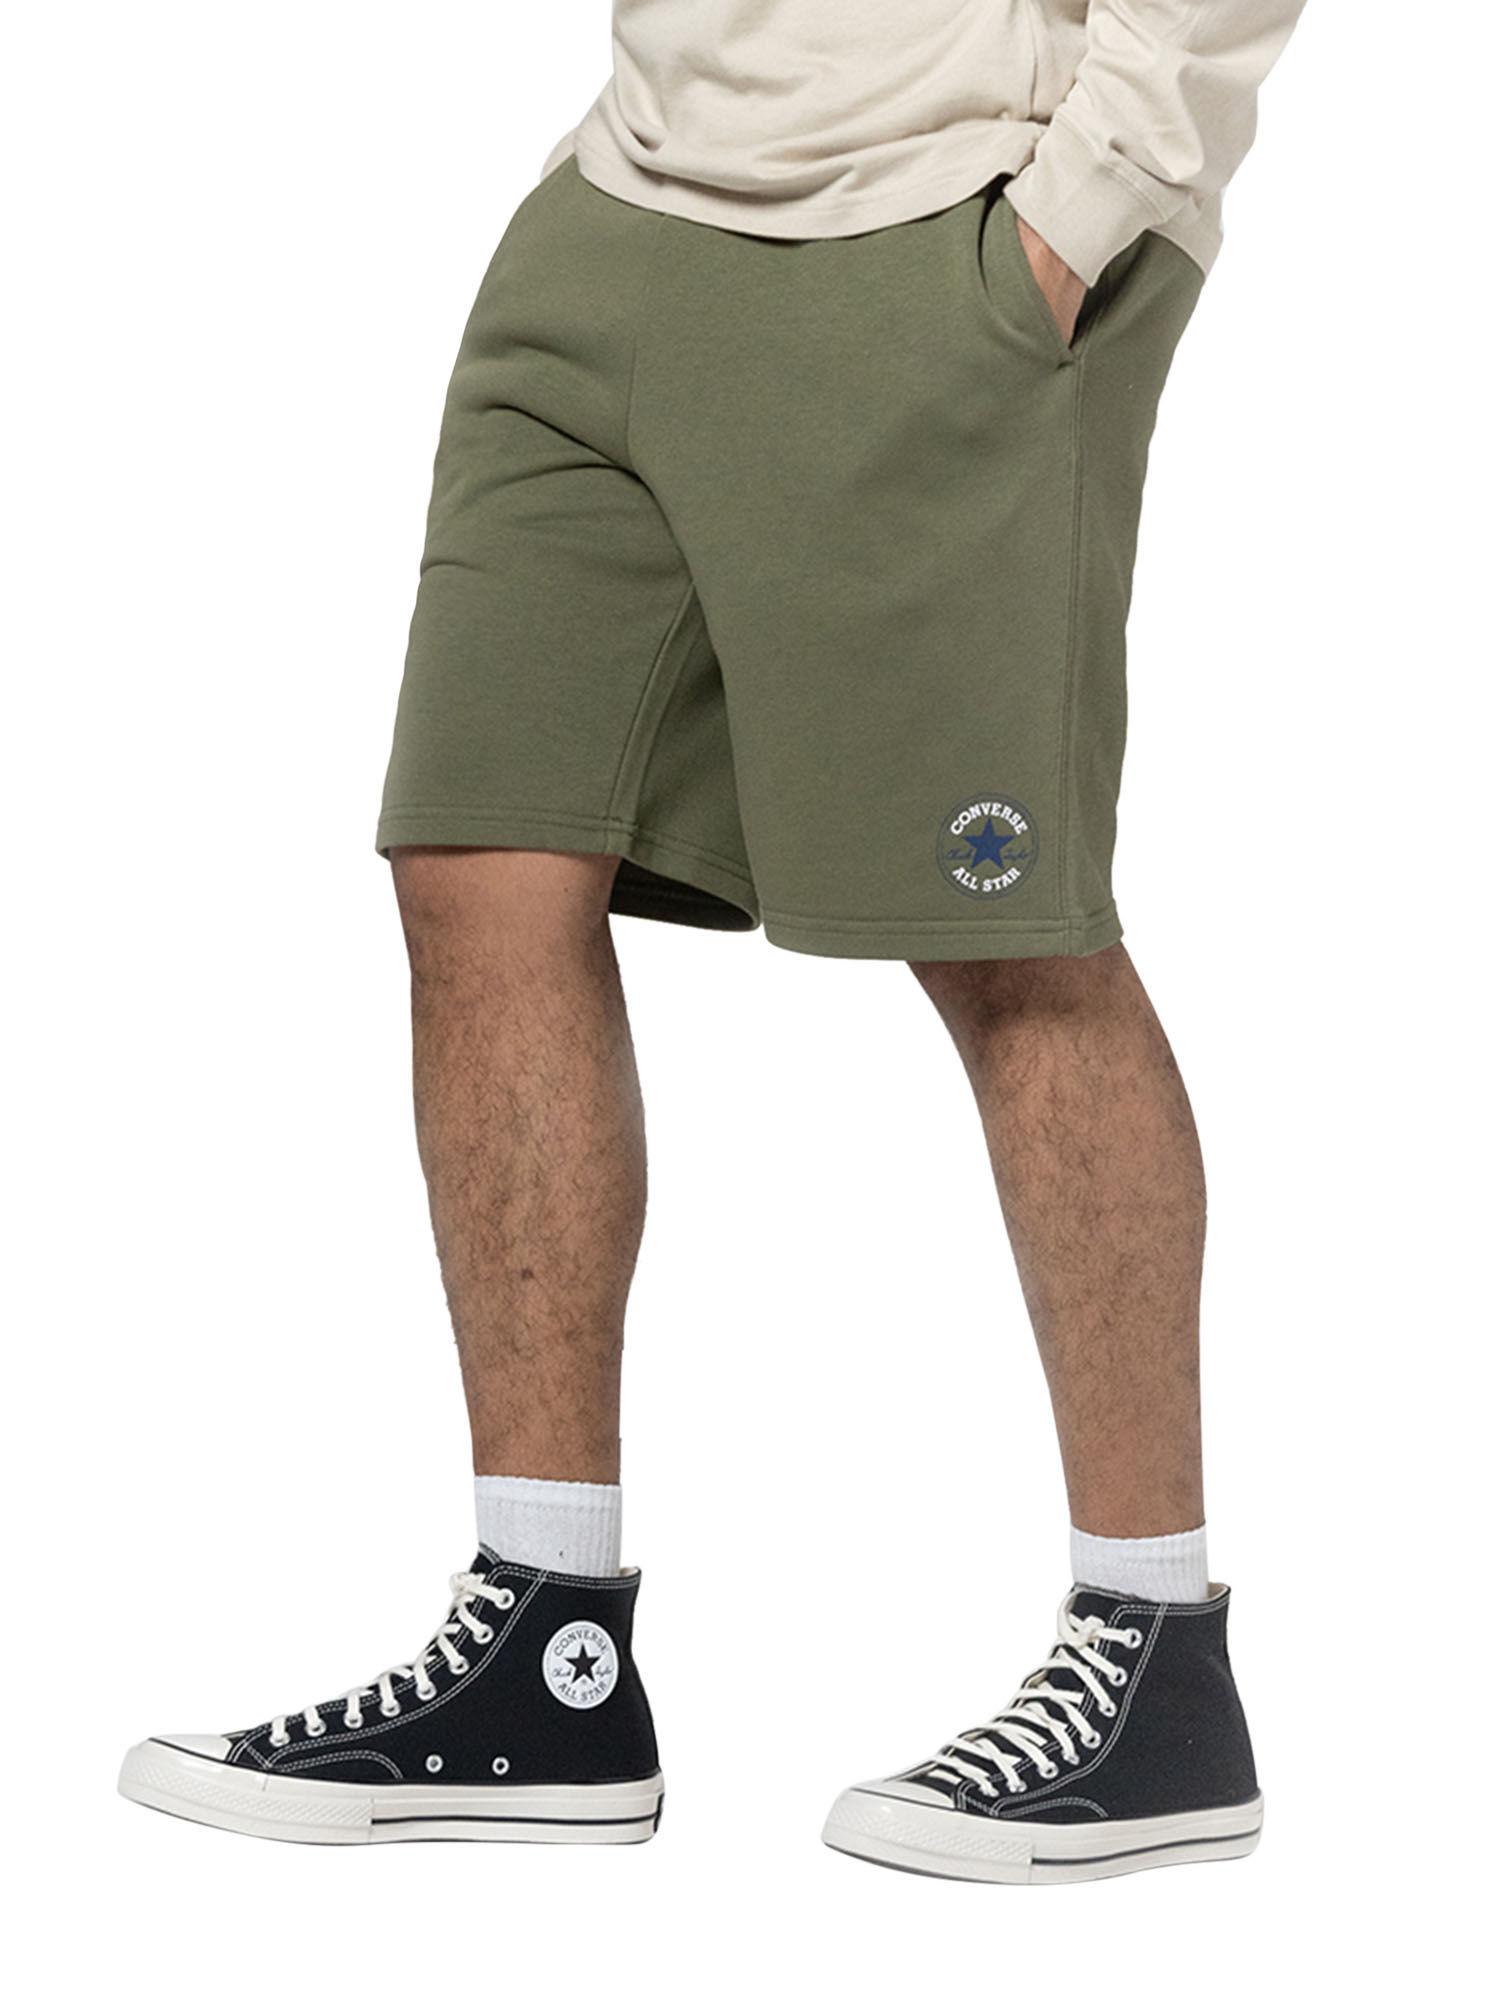 novelty-chuck-patch-shorts